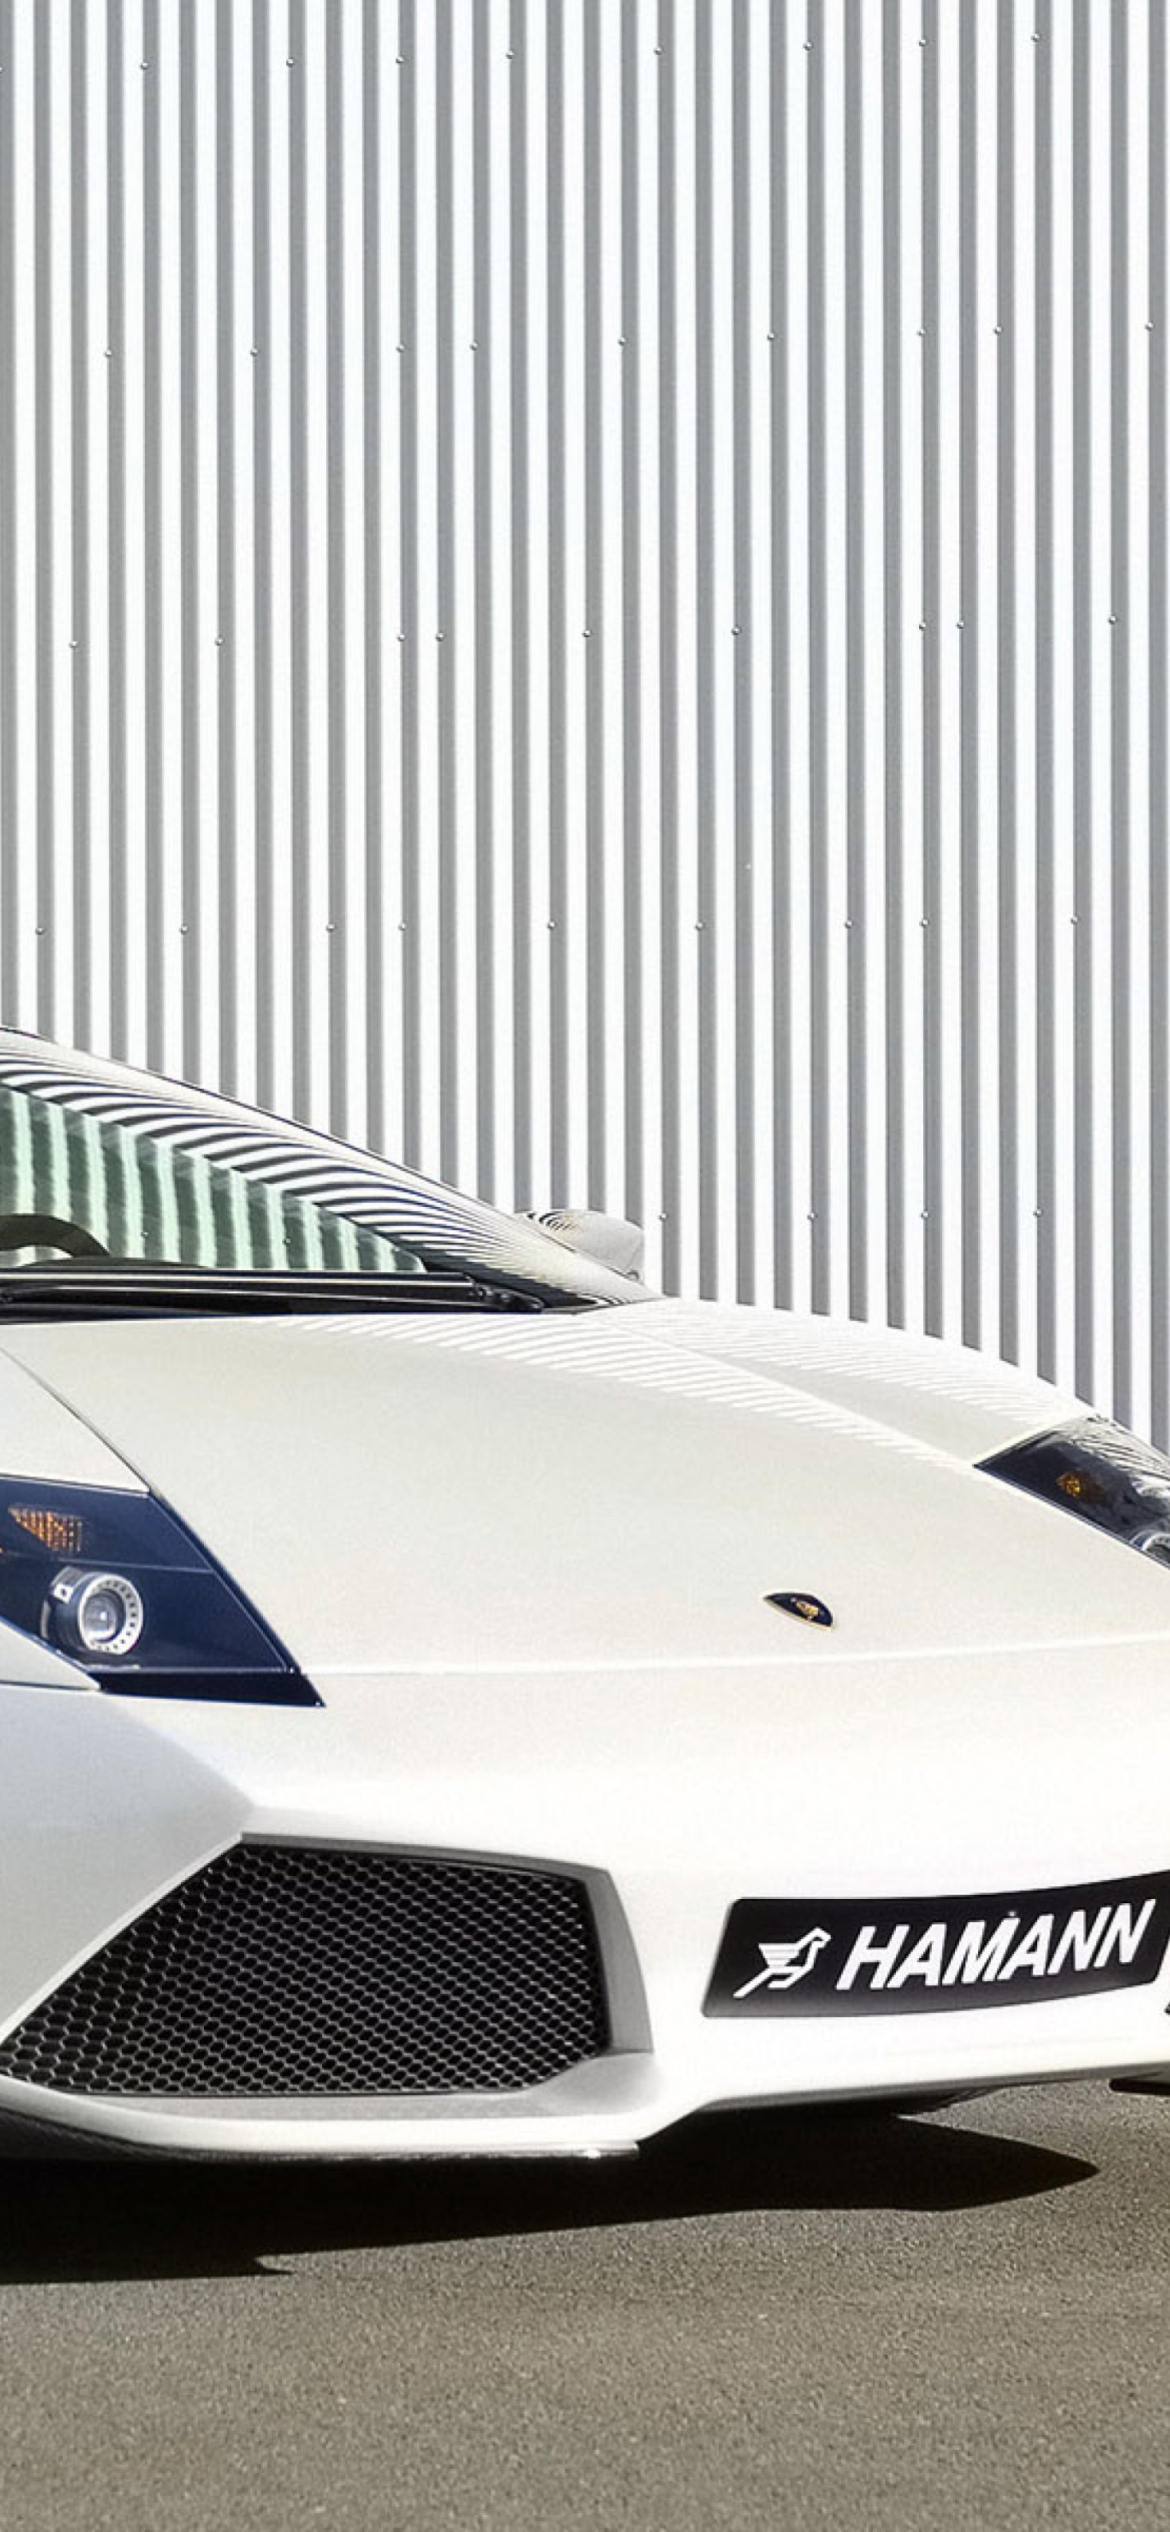 Fondo de pantalla Lamborghini Hamann 1170x2532